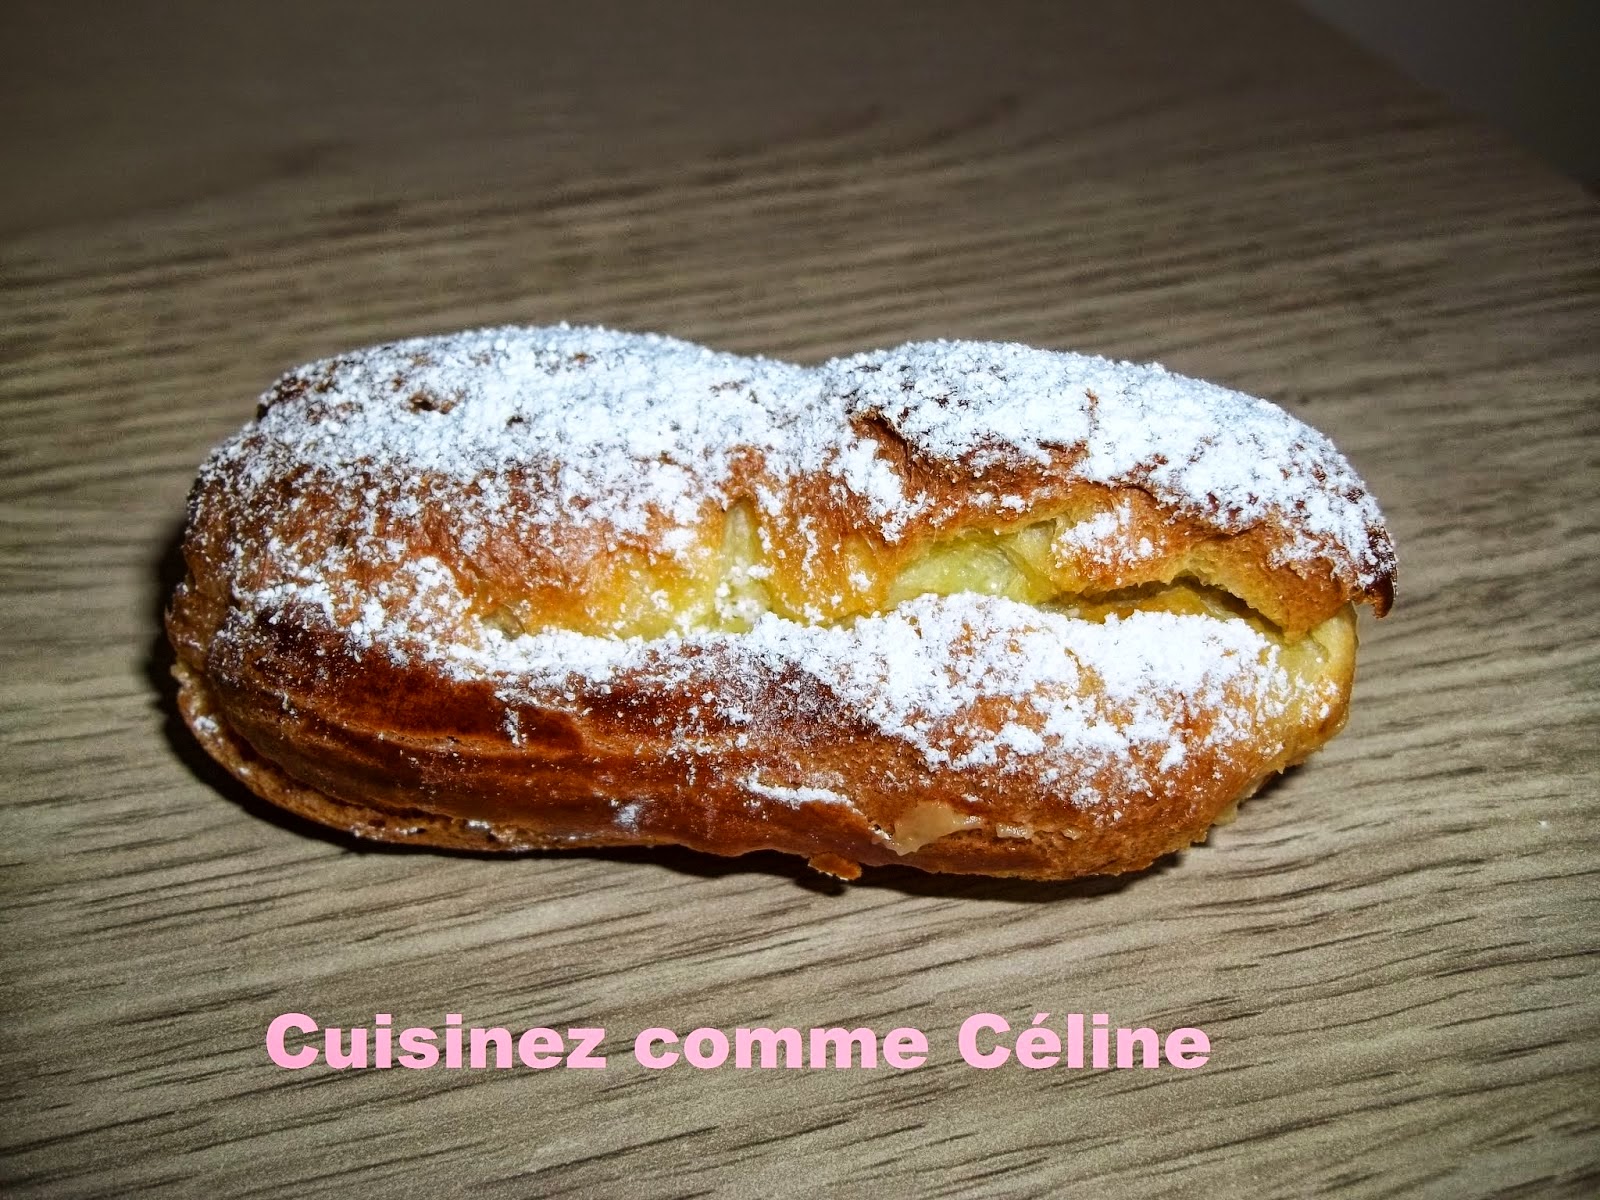 http://cuisinezcommeceline.blogspot.fr/2014/12/eclairs-au-cafe.html